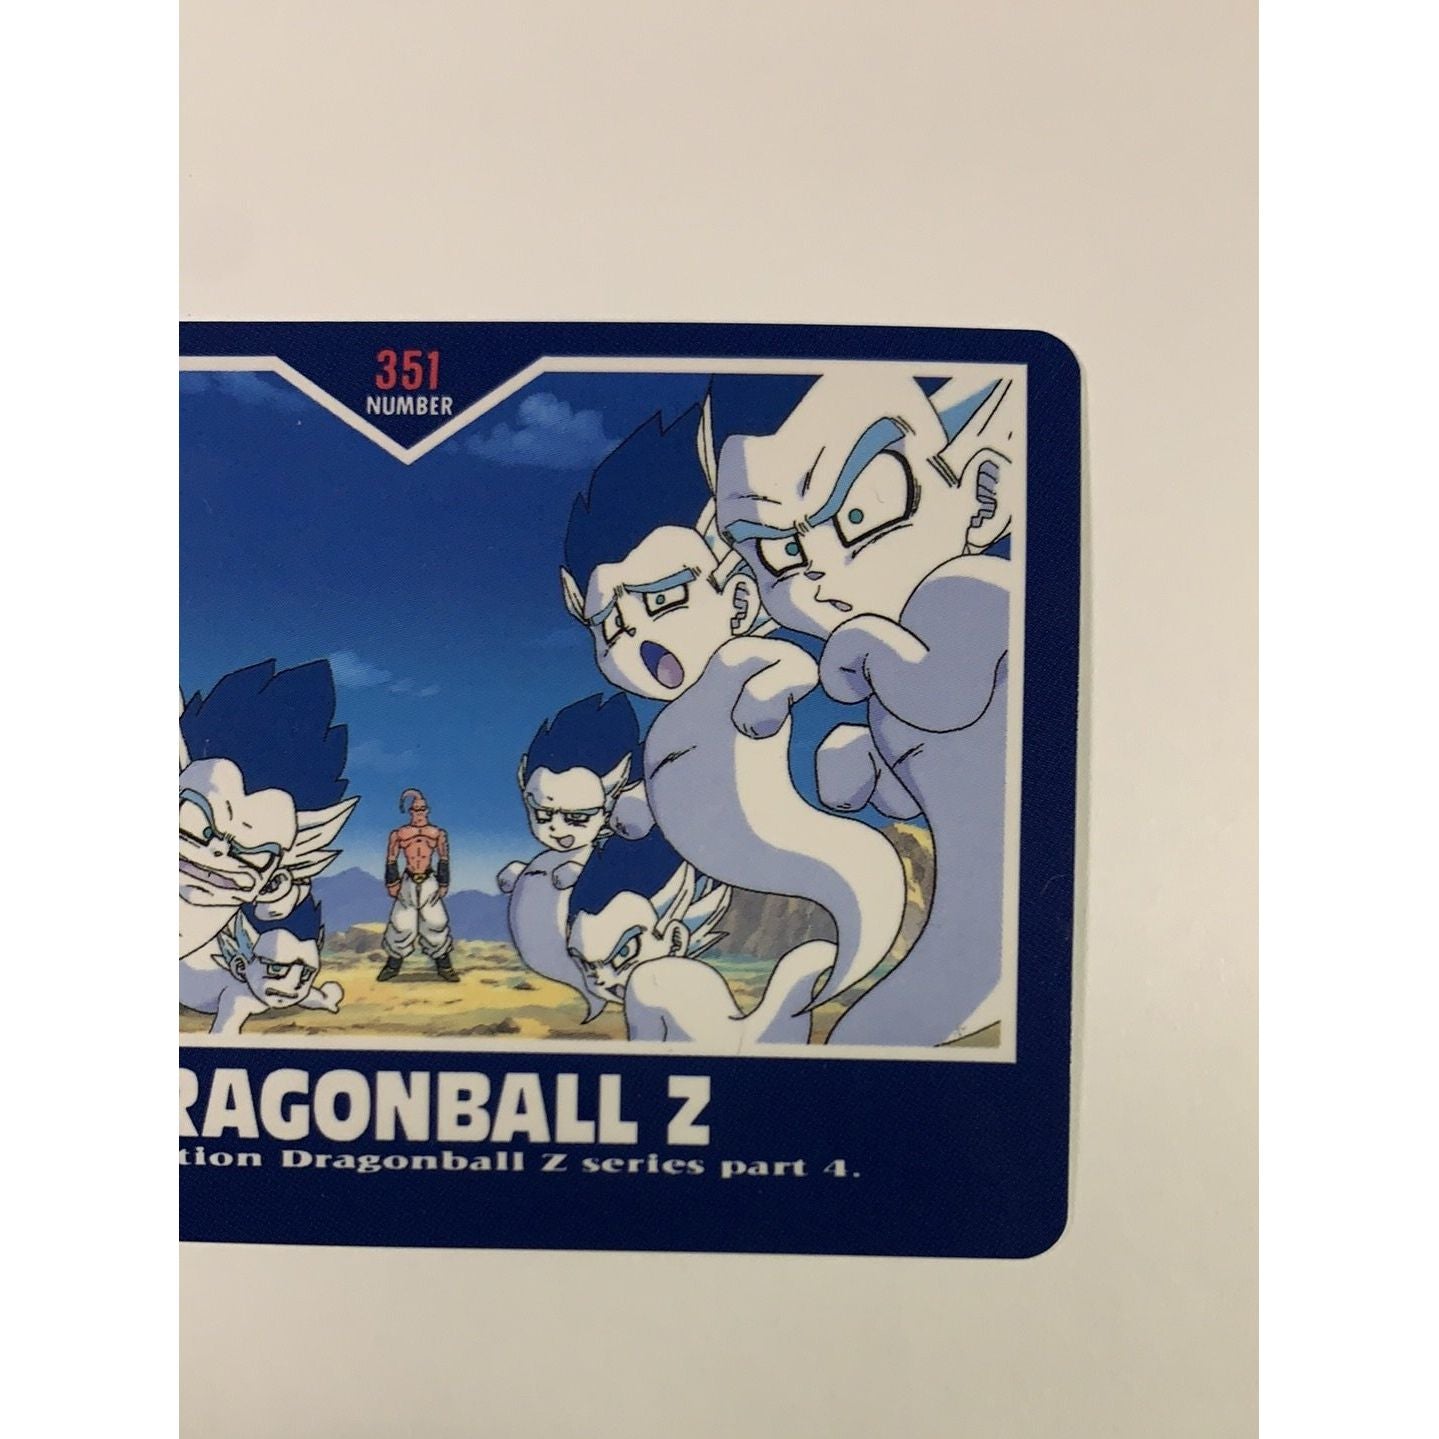  1995 Carte Hero Collection Dragon Ball Z Part 4 Majin Boo Crew #351  Local Legends Cards & Collectibles